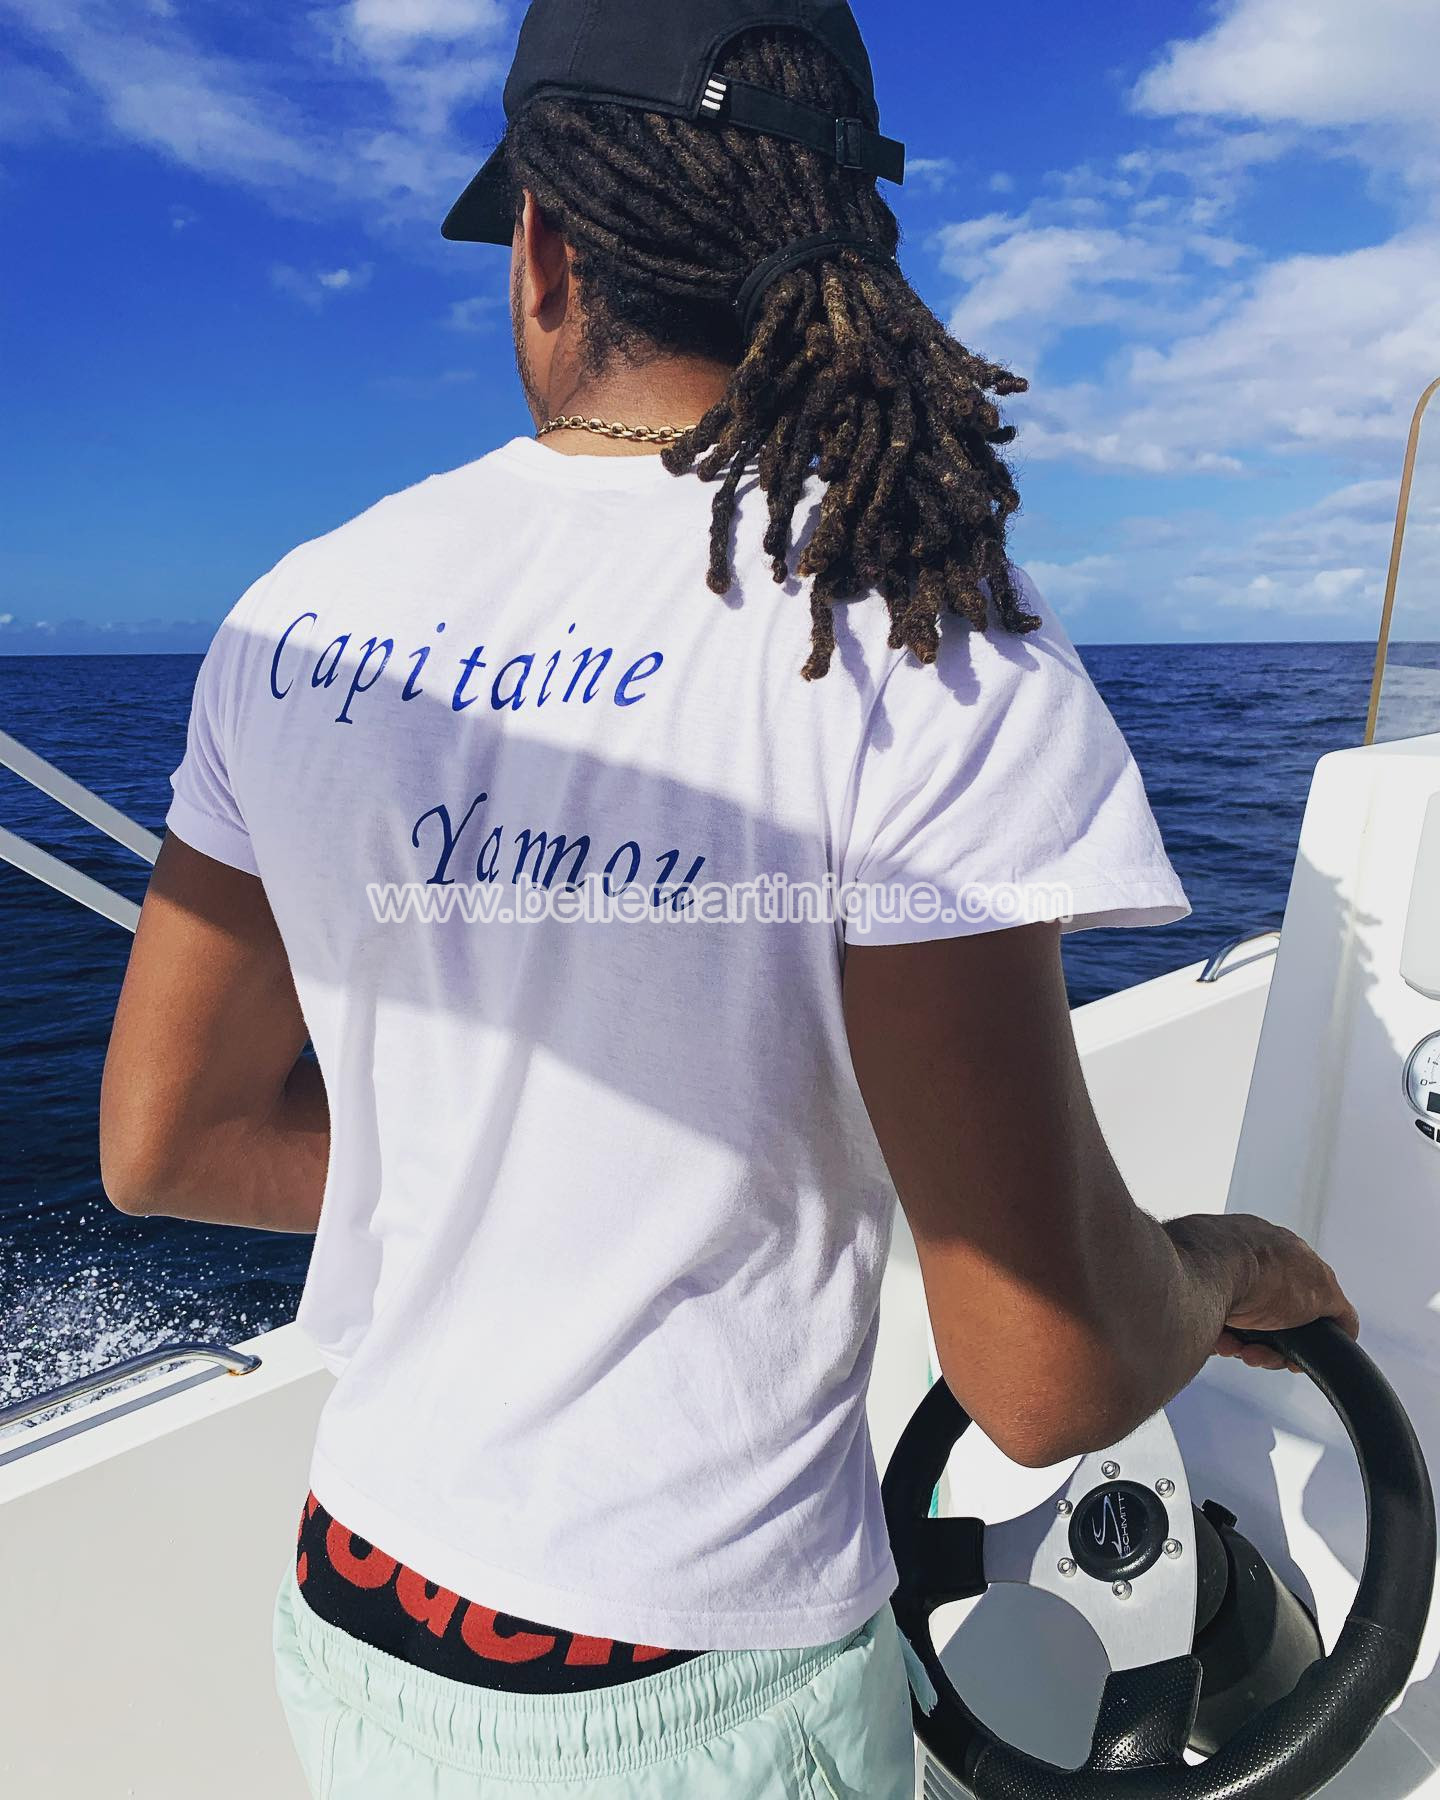 Yannnou-excursion-balade-en-mer-découverte-dauphins-martinique-caraibes-antilles-capitaine